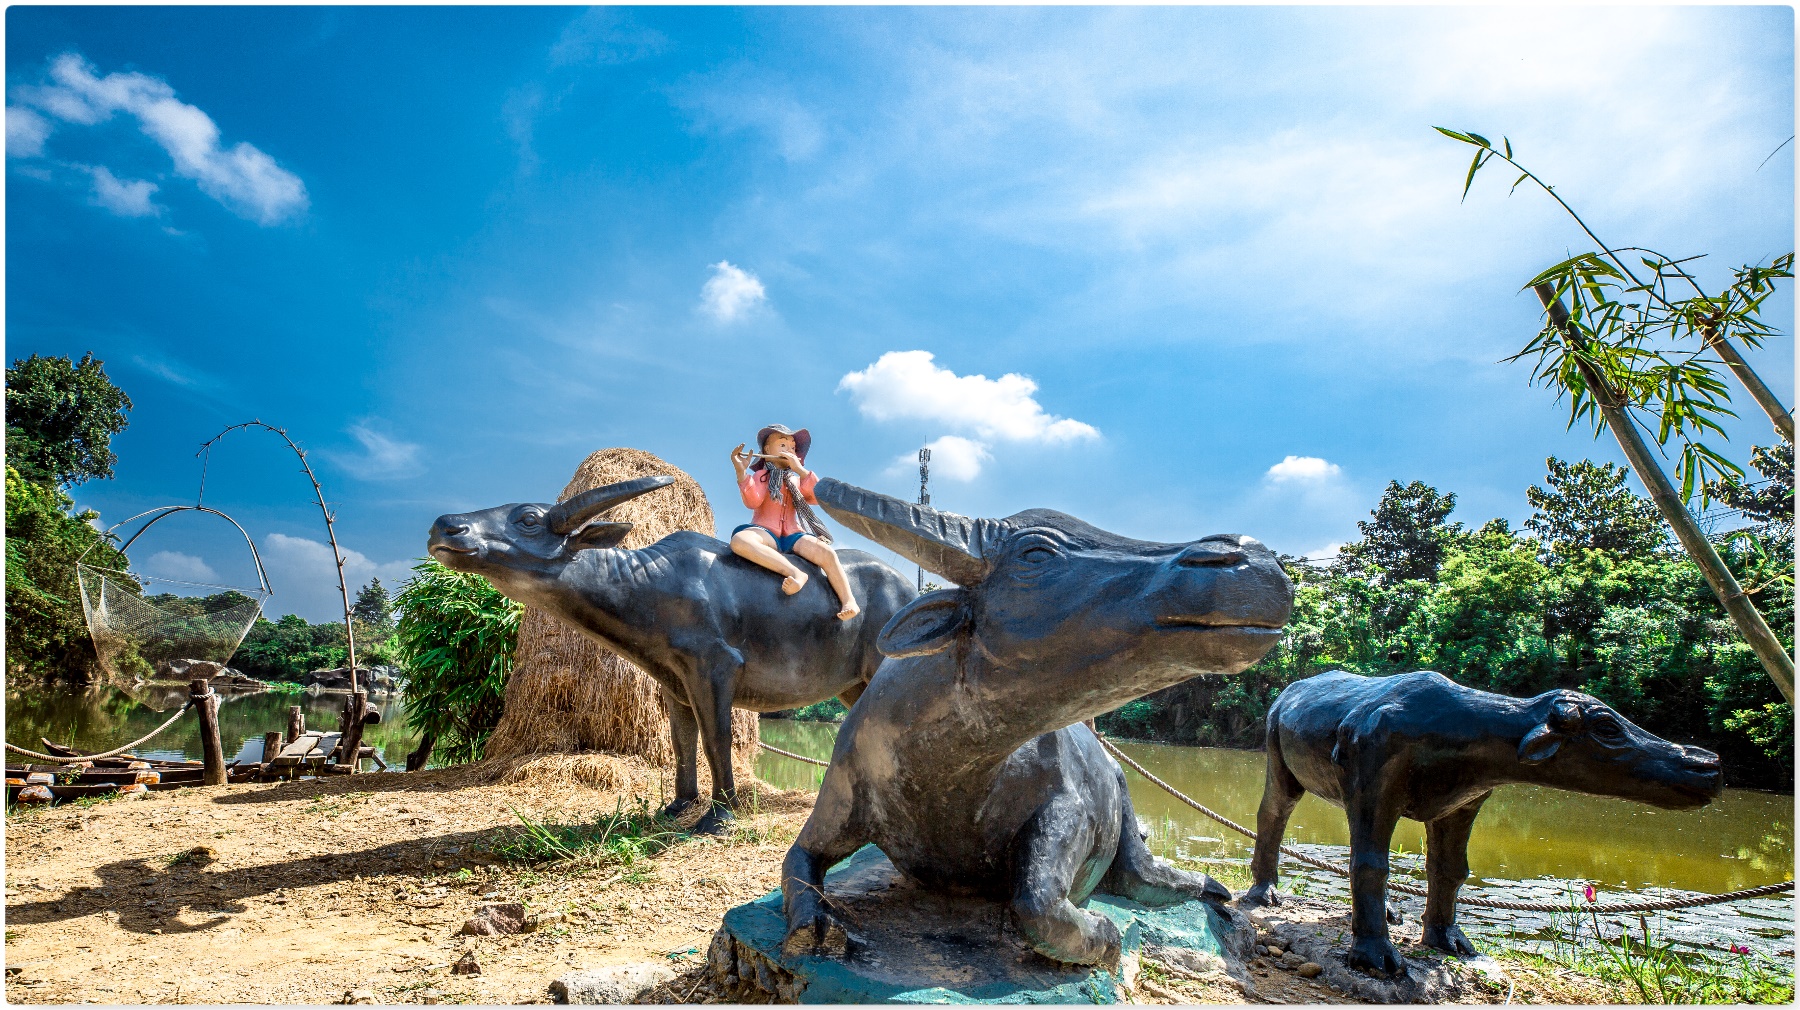 Khu du lịch Bửu Long - Địa điểm vui chơi hấp dẫn gần Sài Gòn